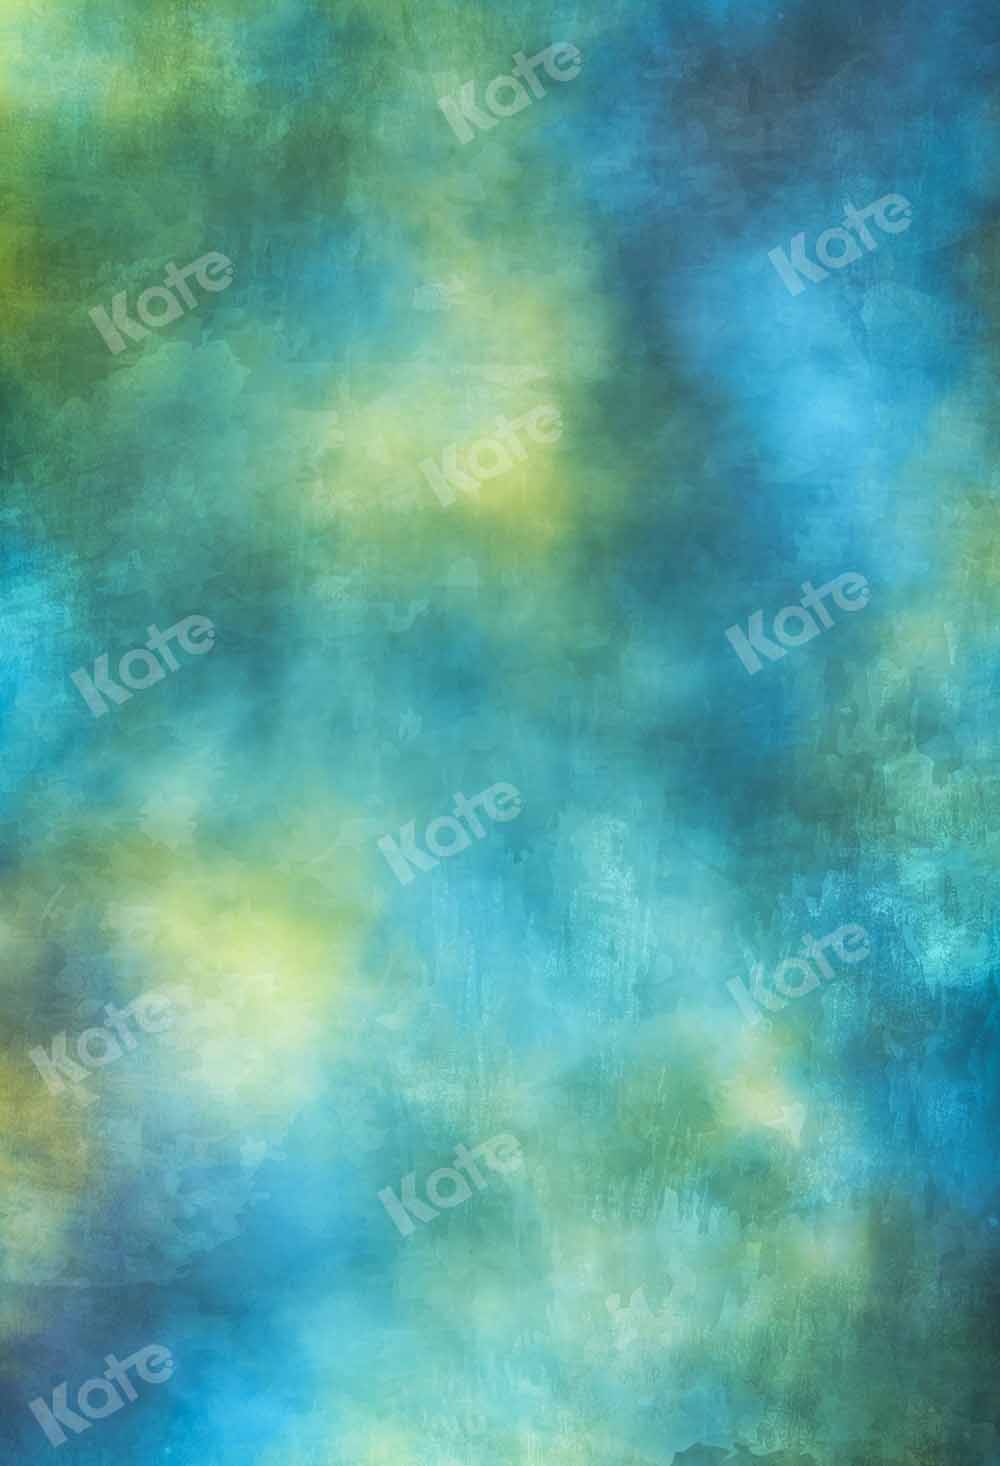 Kate青緑色の背景の抽象的なテクスチャ背景Kate Image